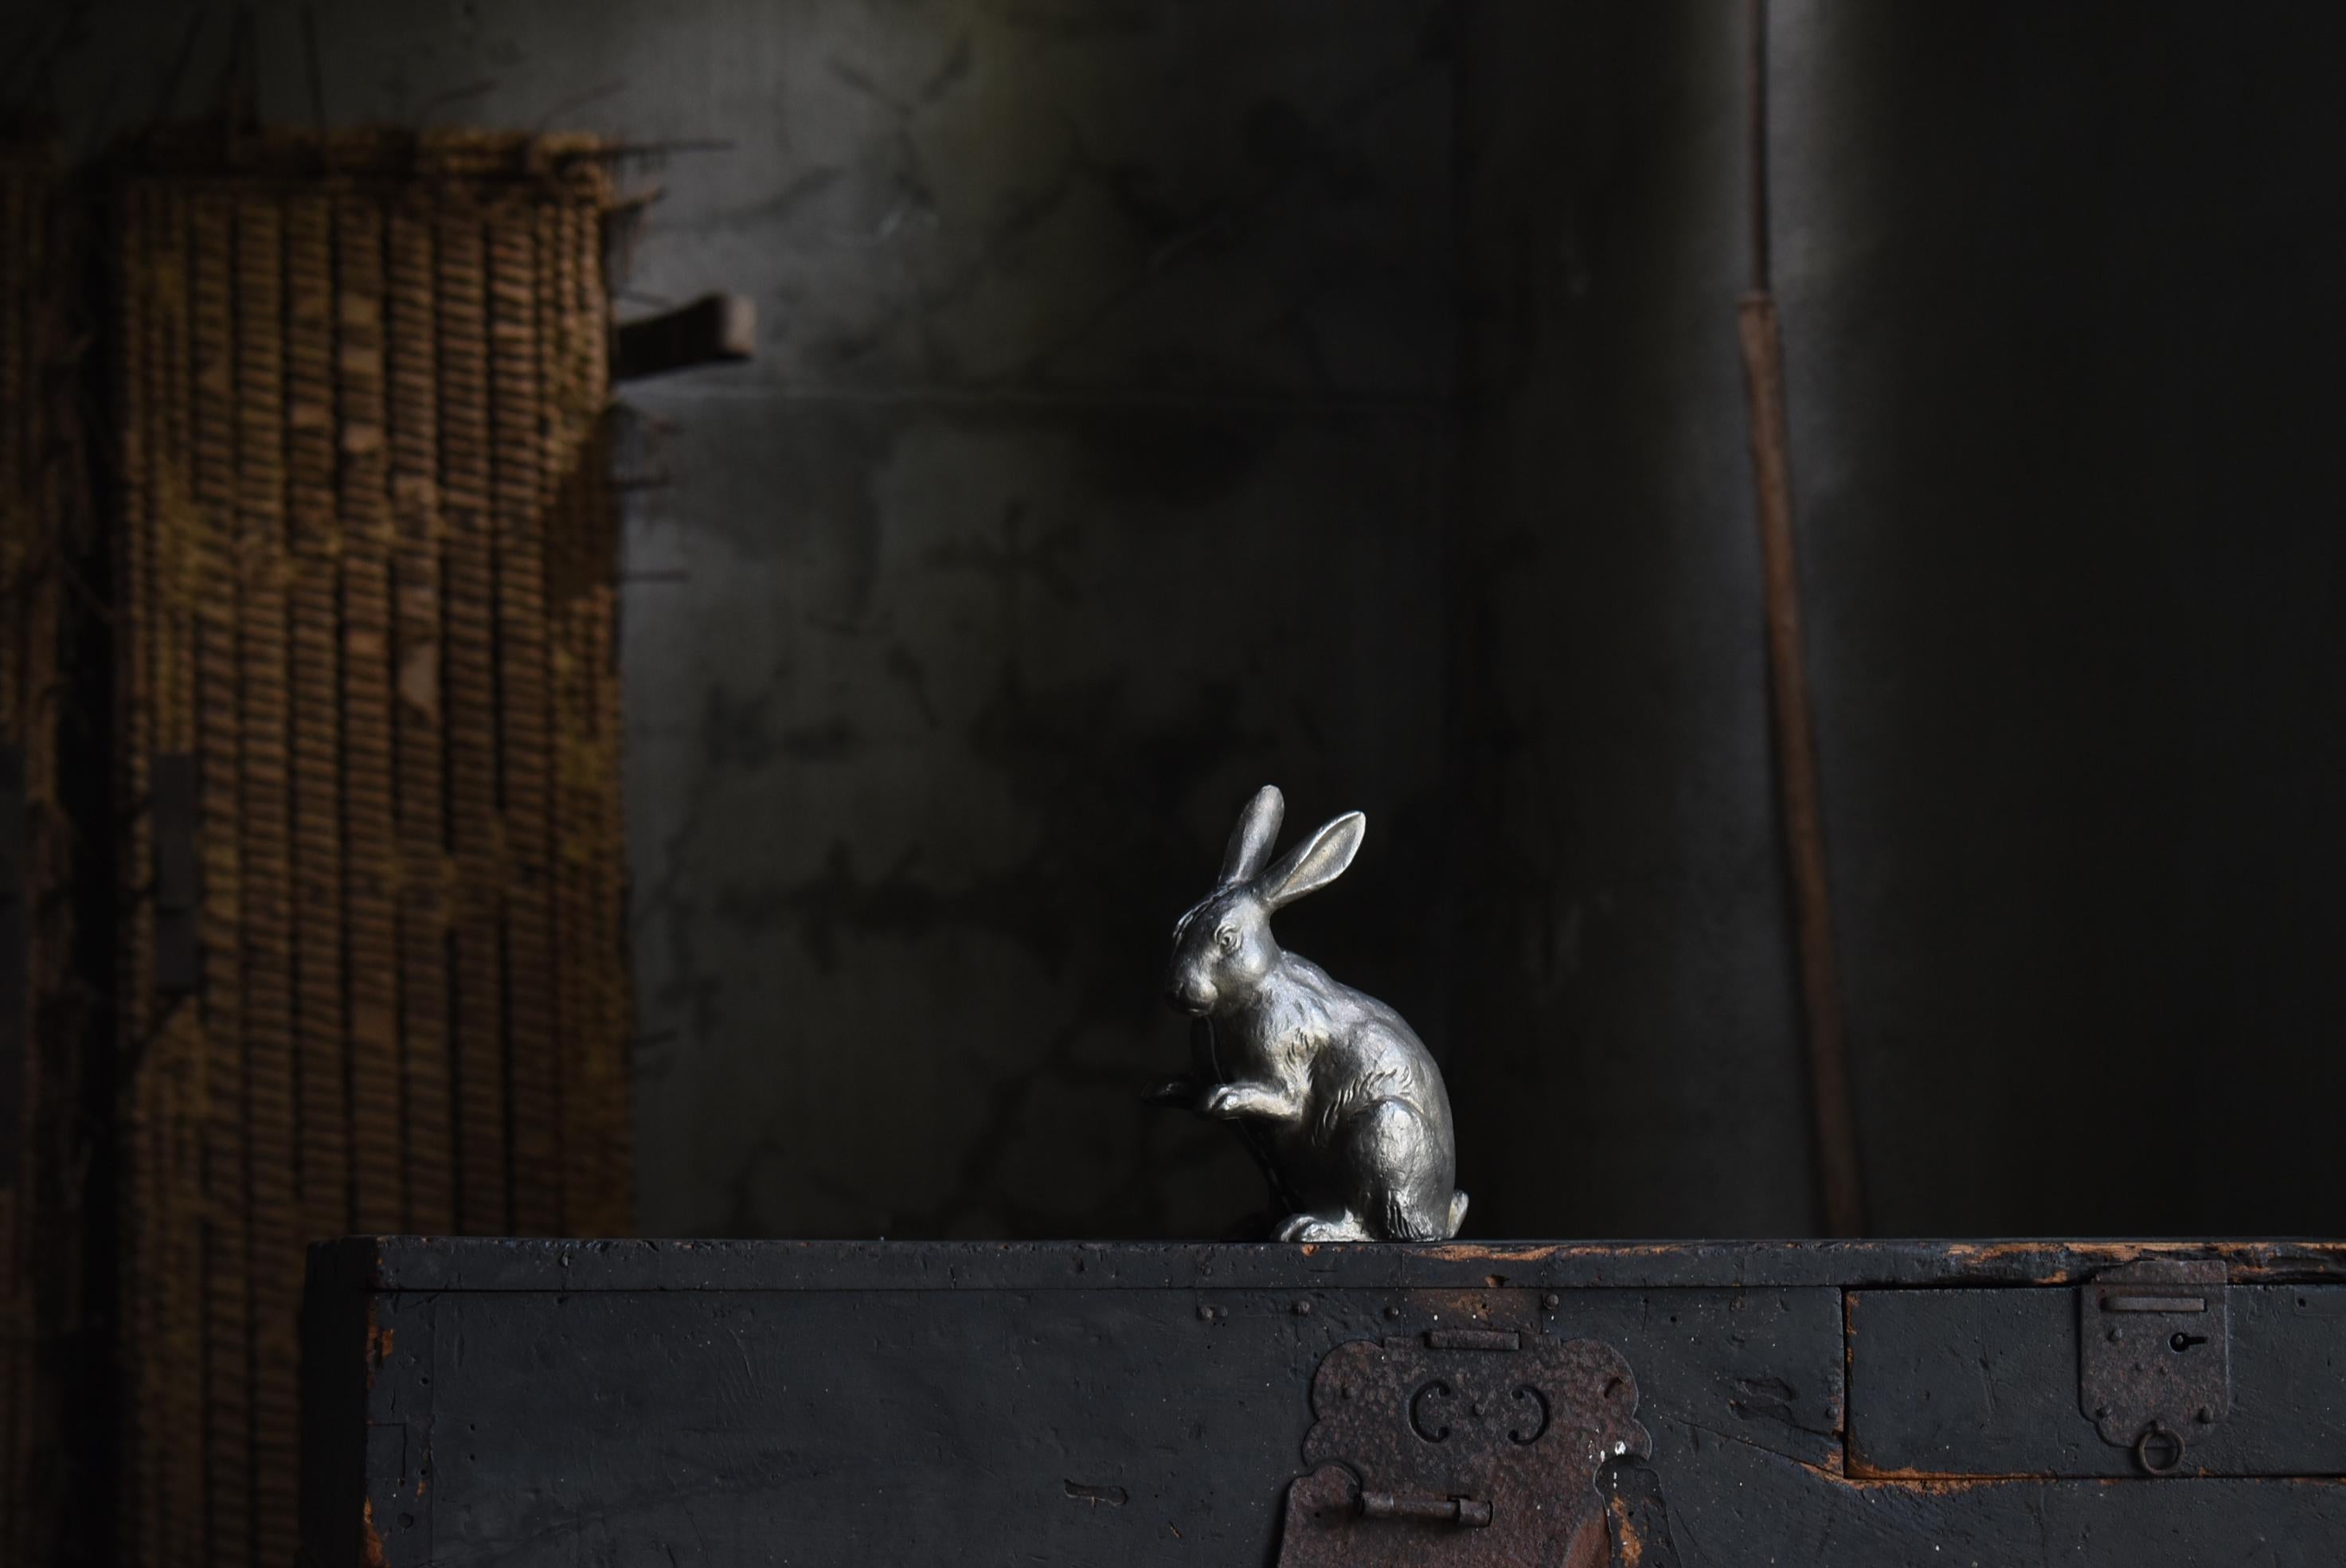 Dies ist eine alte japanische Kaninchenfigur aus Eisen.
Es stammt aus der mittleren Showa-Periode (1940er-1970er Jahre).
Er ist aus Gusseisen gefertigt.

Sehr aufwendig gemacht.
Es hat ein Gefühl von Massivität, das dem Gusseisen eigen ist.
Trotz